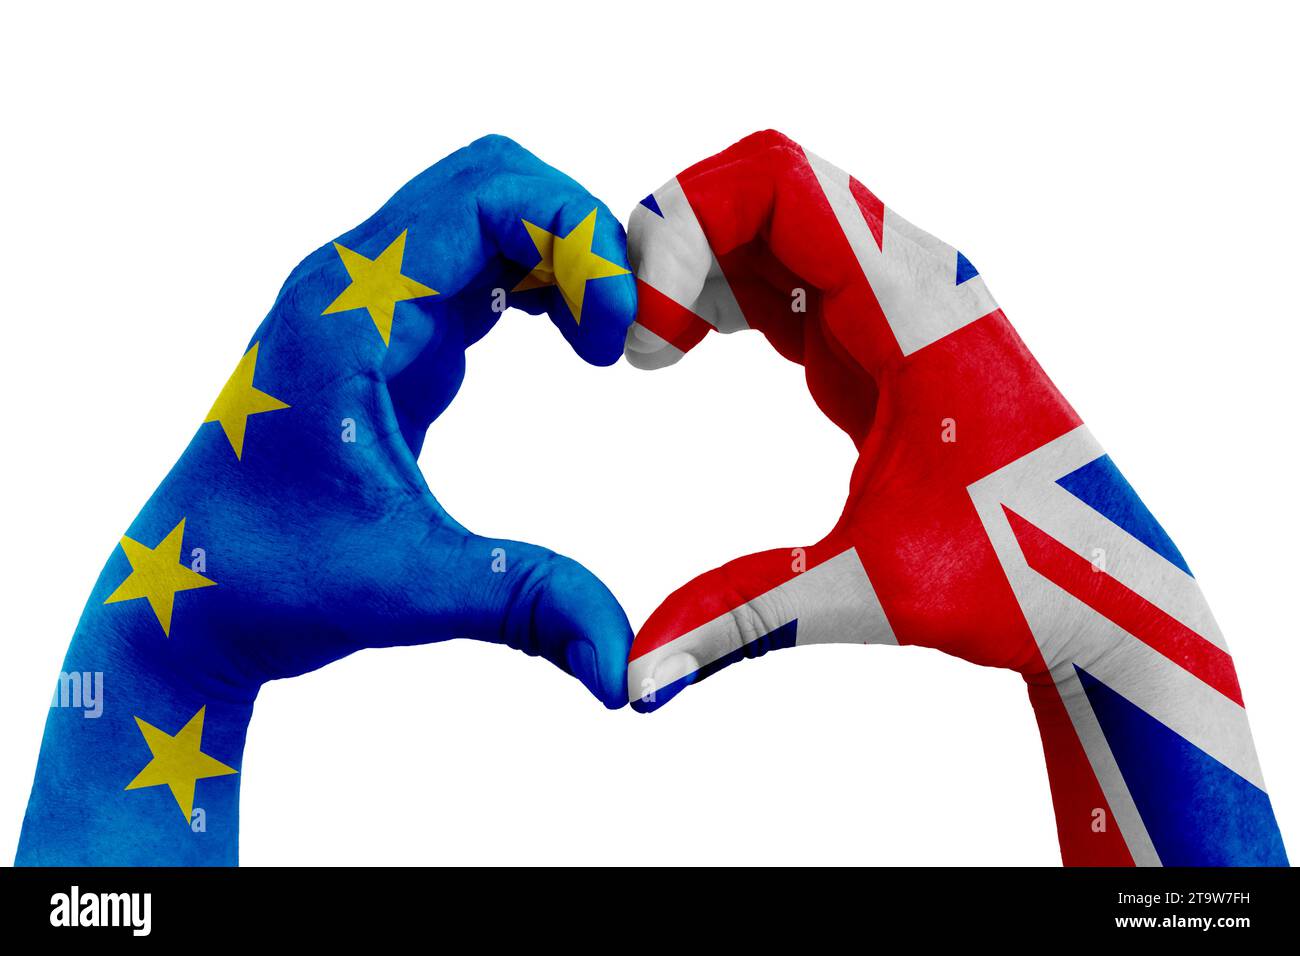 brexit, les mains de l'homme en forme de coeur modelé avec le drapeau de l'Union européenne bleu et le drapeau de la grande-bretagne royaume-uni sur le fond blanc, vote référendum pour le concept de sortie du royaume-uni Banque D'Images